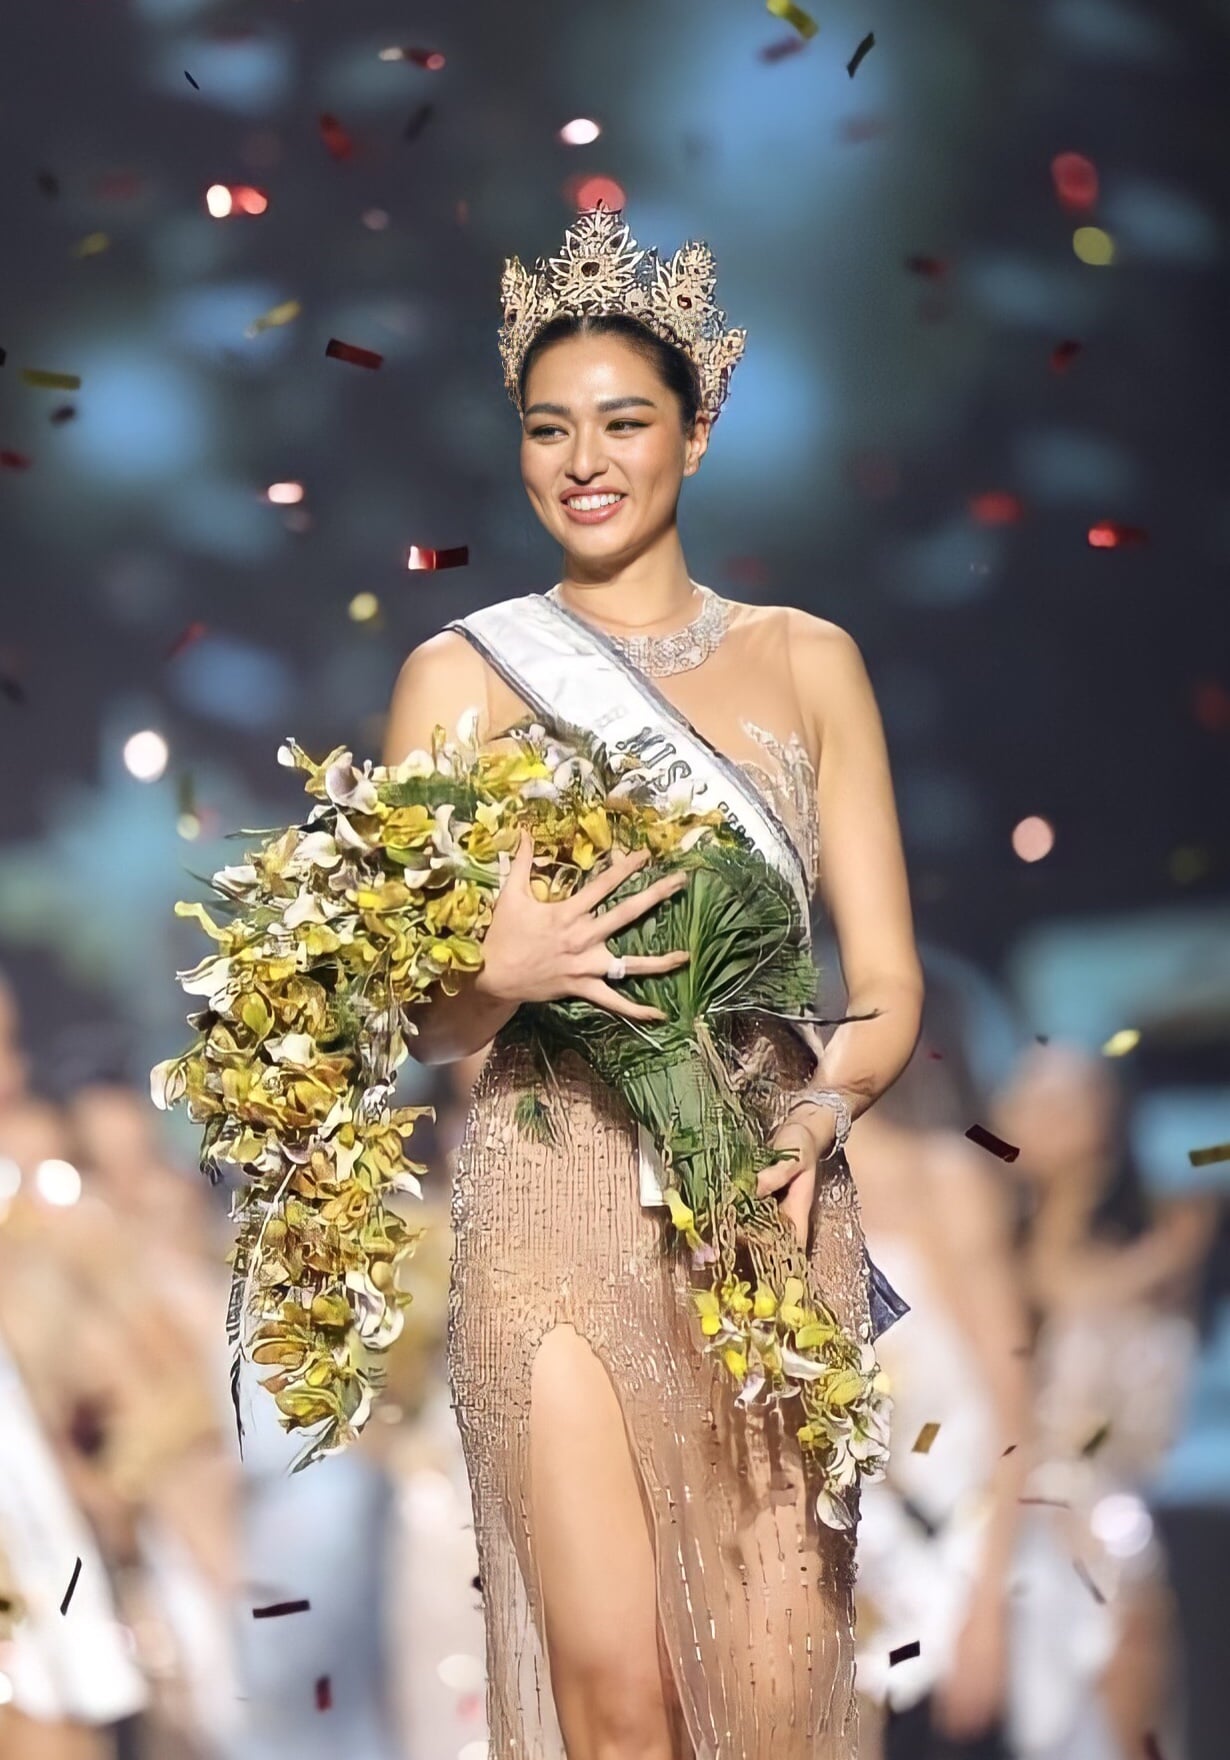 VĐV bóng chuyền Anchilee Scott-Kemmis đăng quang Hoa hậu hoàn vũ Thái Lan 2021 - Ảnh 4